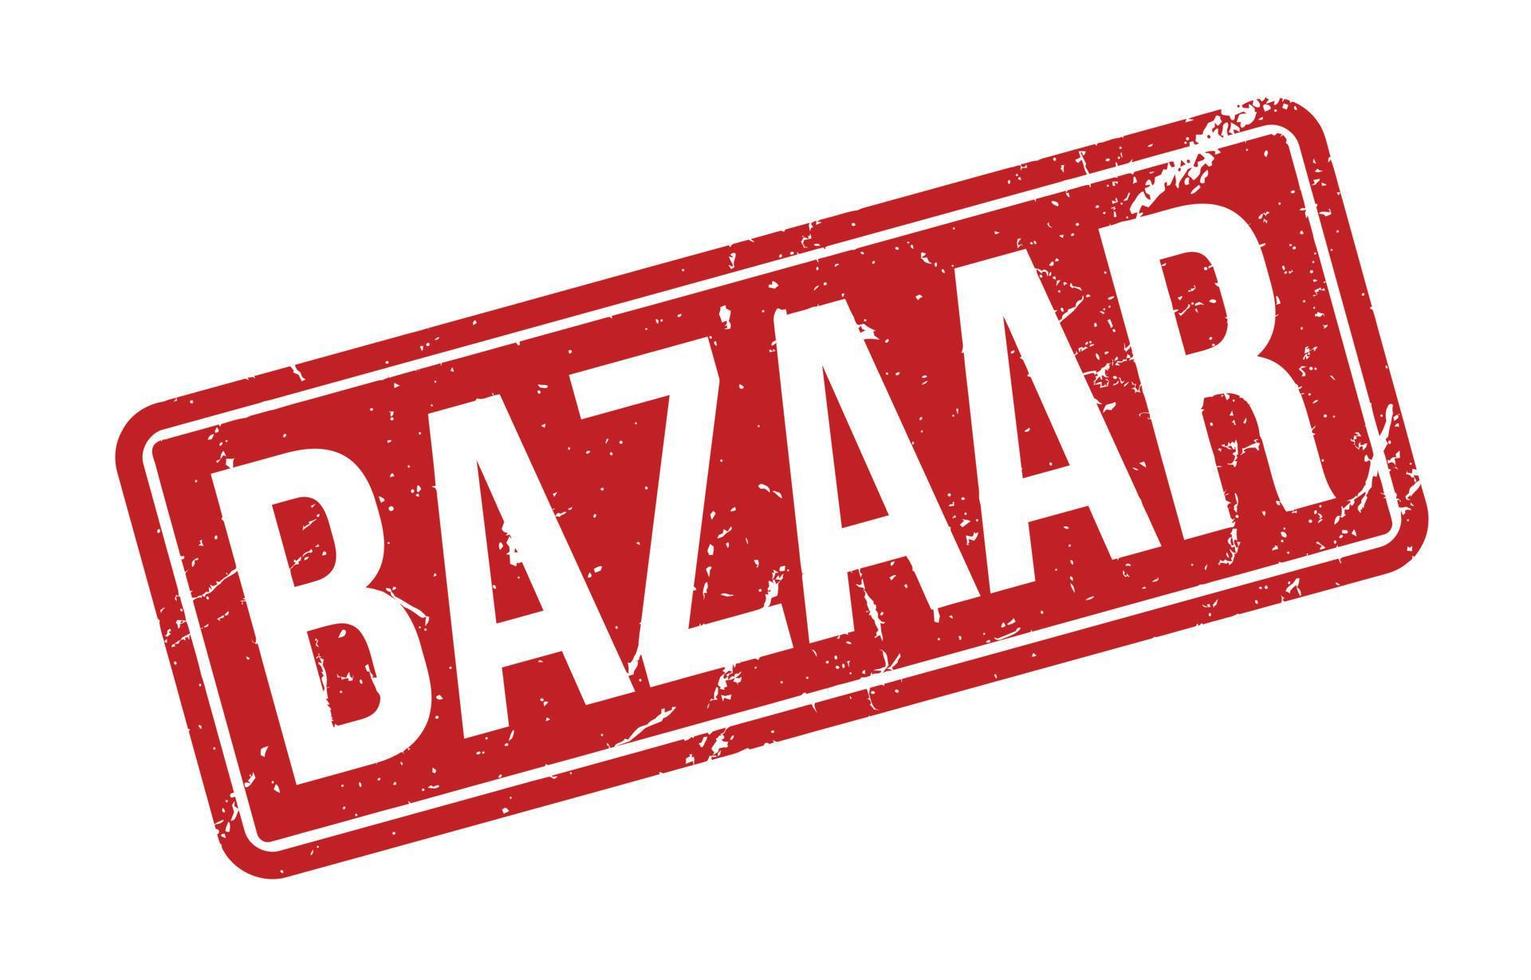 carimbo de borracha do bazar. ilustração em vetor selo grunge de borracha de bazar vermelho - vetorial